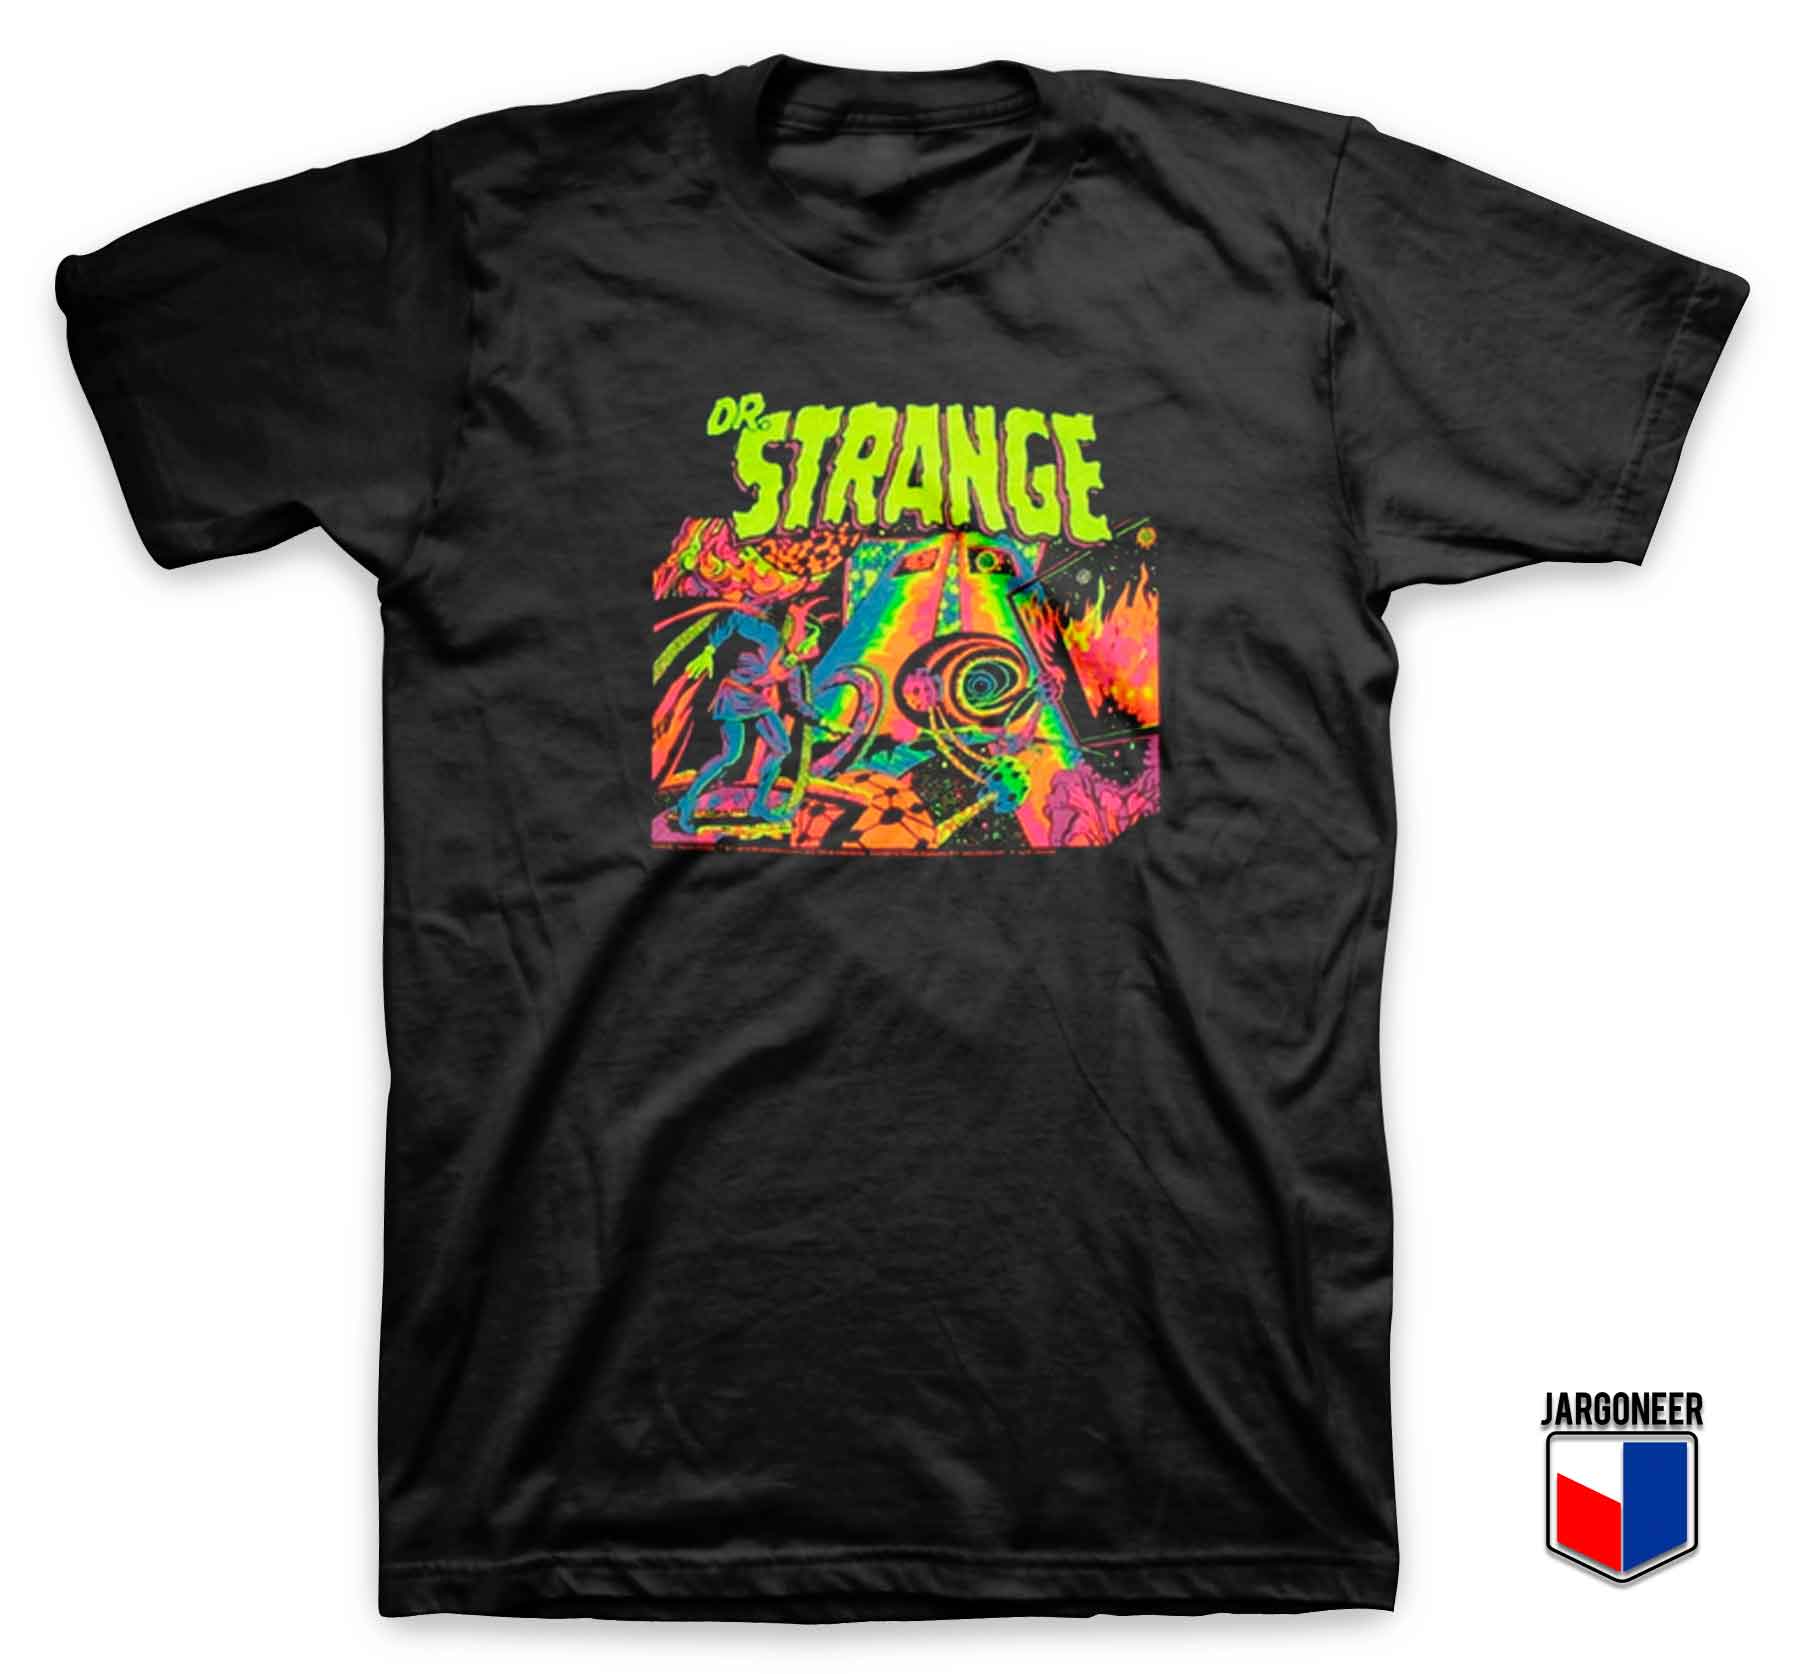 Dr Strange Colorful - Shop Unique Graphic Cool Shirt Designs